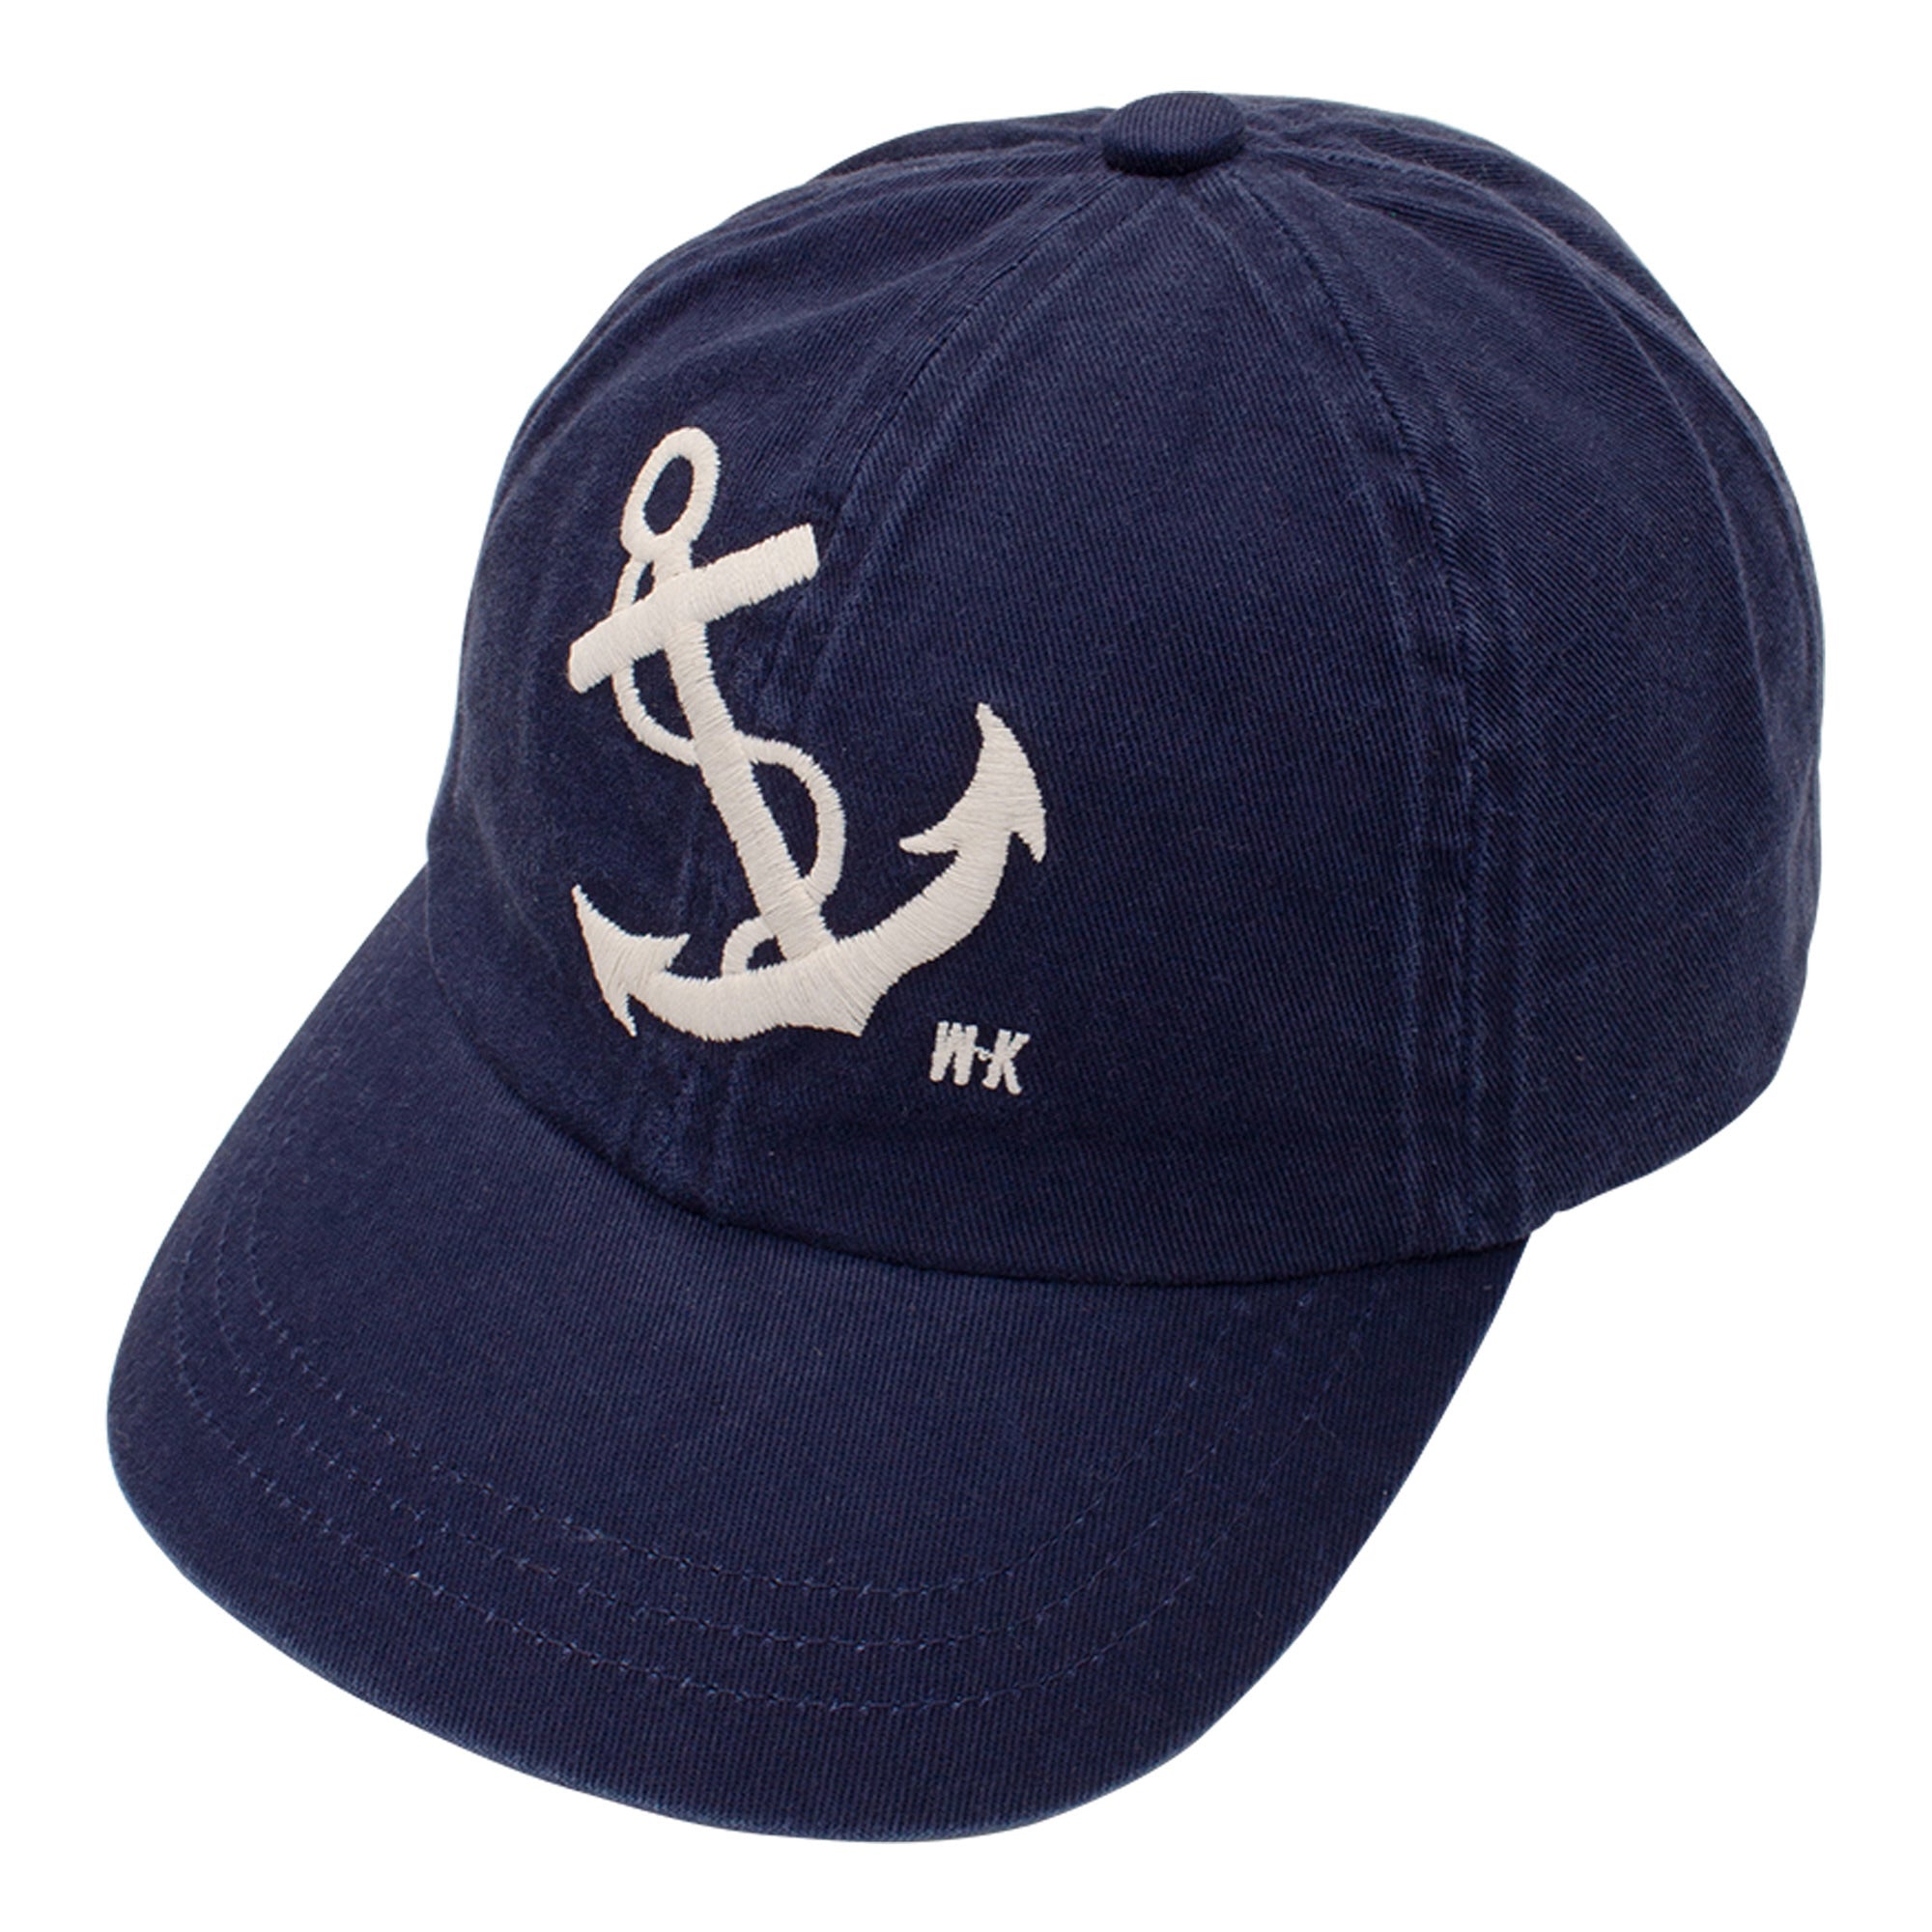 Anchor Cap - Navy